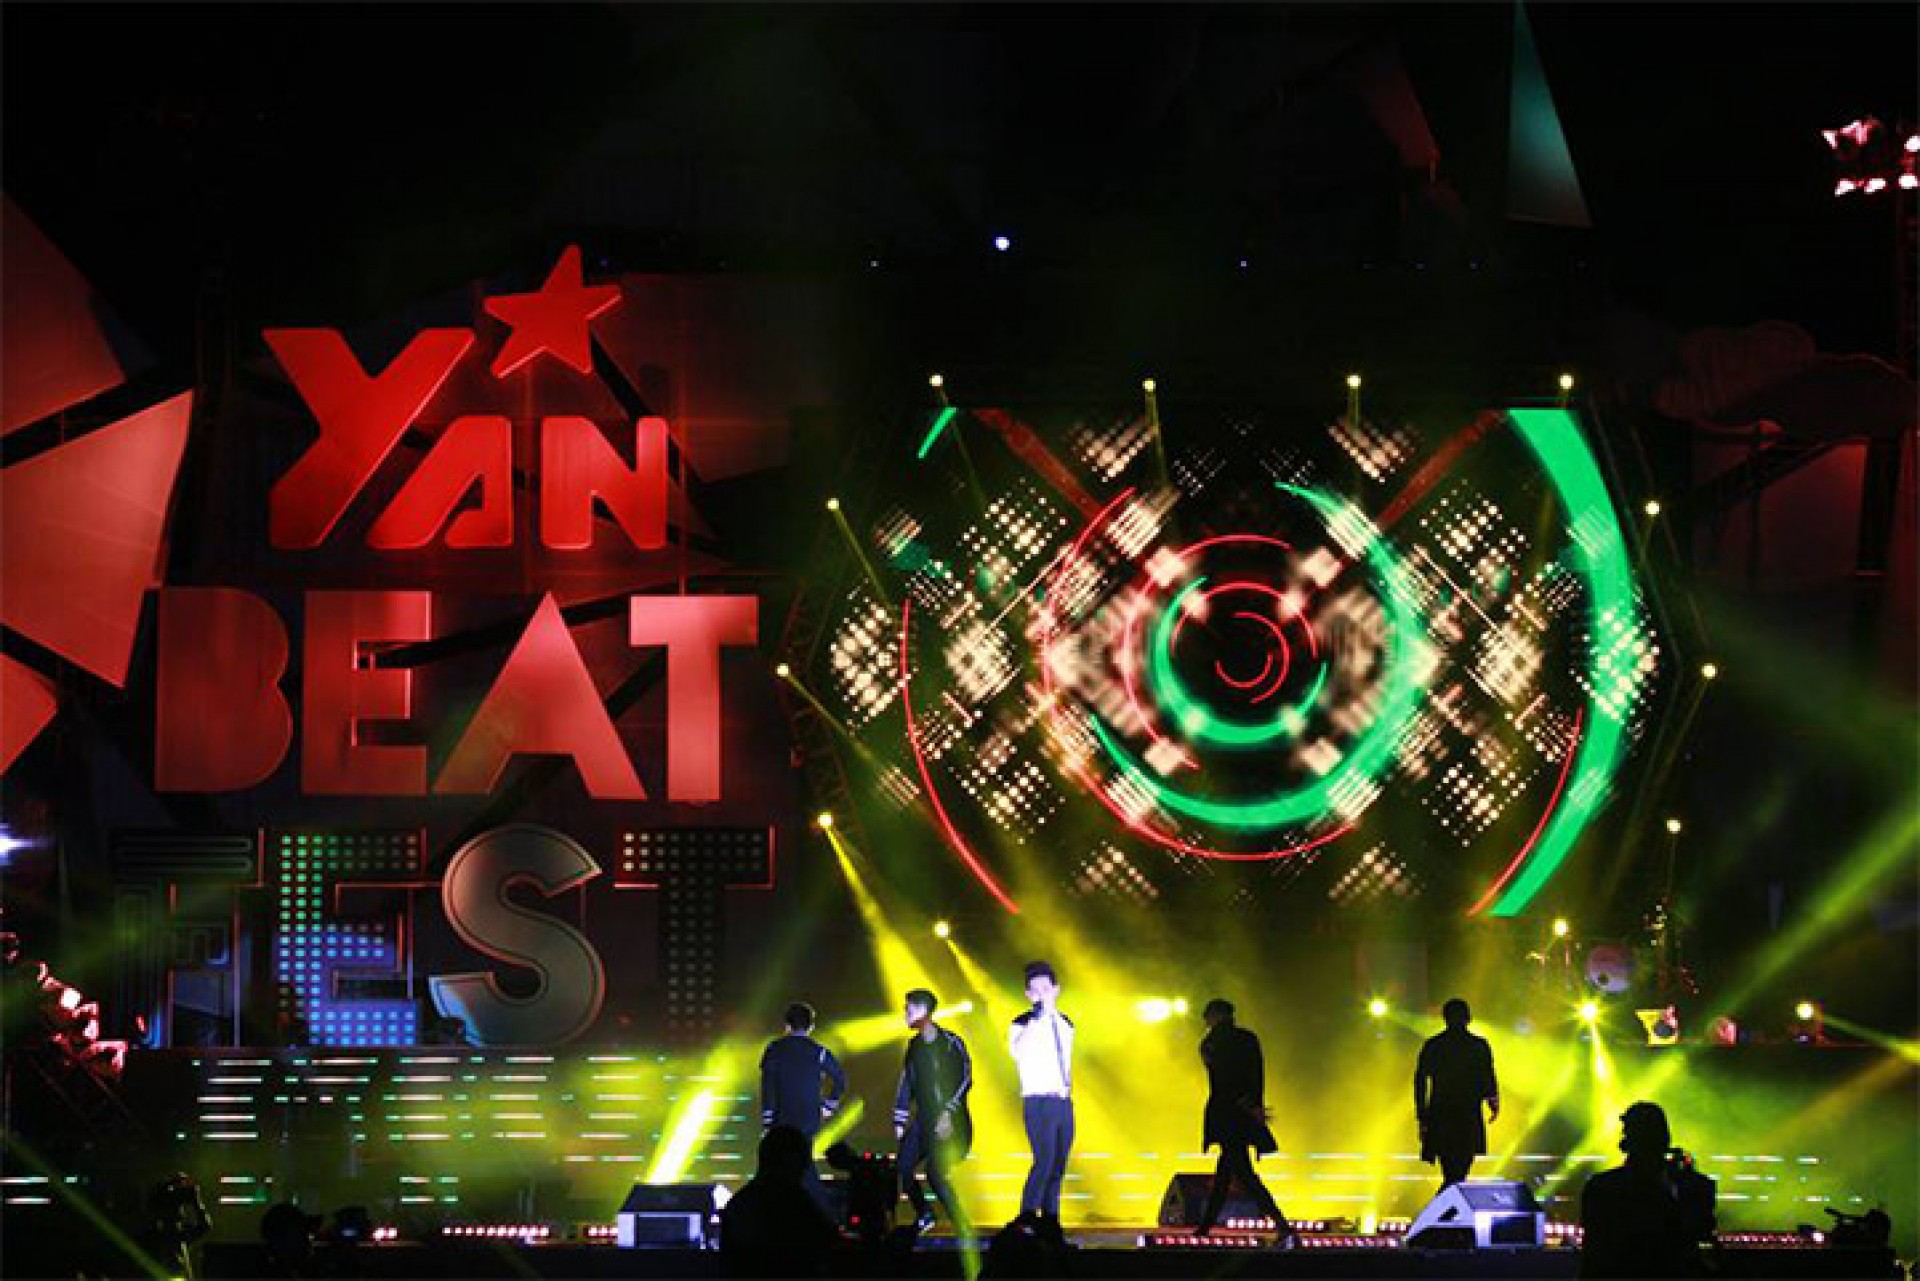 YAN BEATFEST – Lễ hội âm nhạc  ĐẦU TIÊN và LỚN NHẤT tại Việt Nam đã TRỞ LẠI